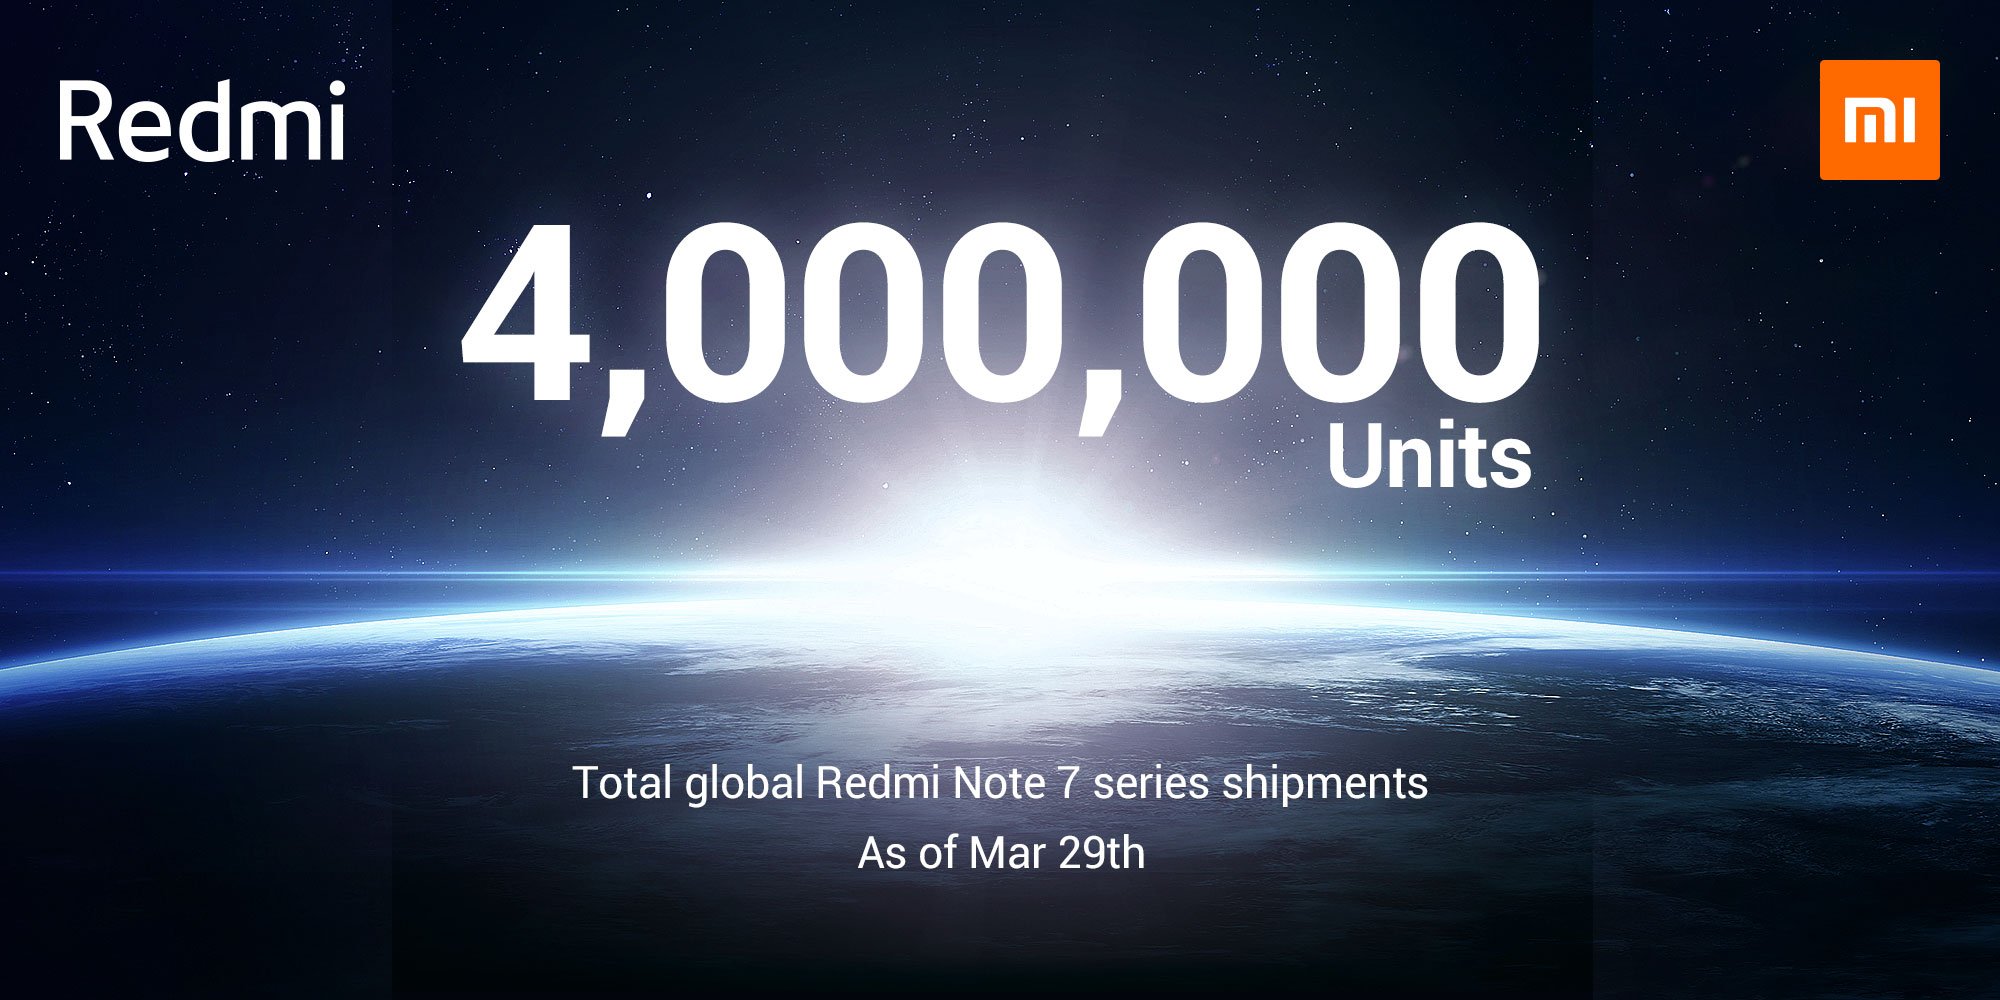 Che successo Redmi Note 7: 4 milioni di unità vendute, e infatti in Italia è difficile da trovare